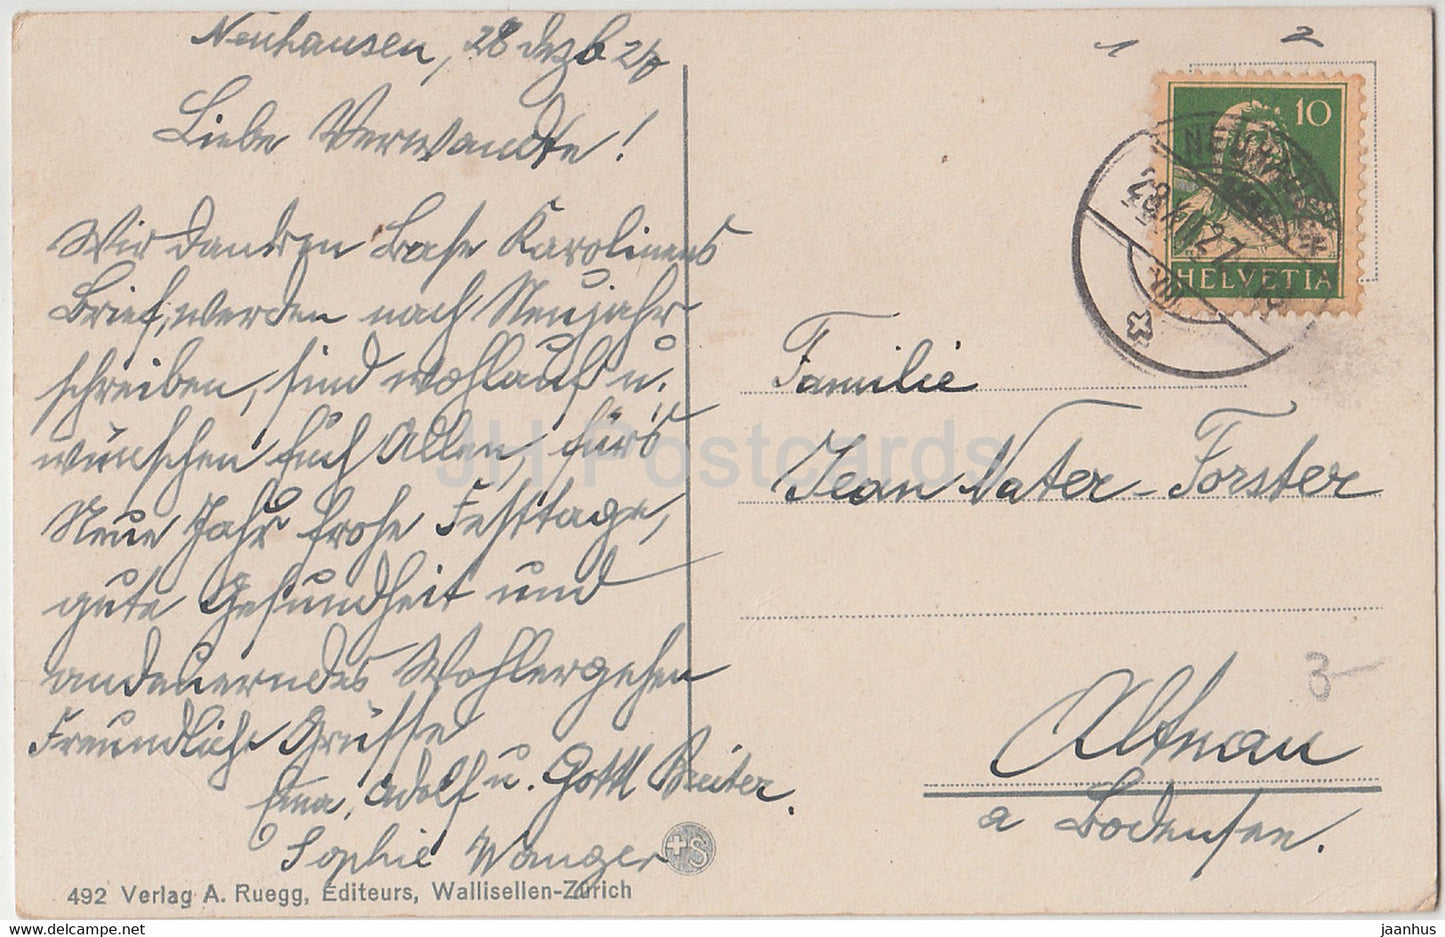 New Year Greeting Card - Herzliche Neujahrswunsche - winter view - A. Ruegg - old postcard - 1927 - Switzerland - used